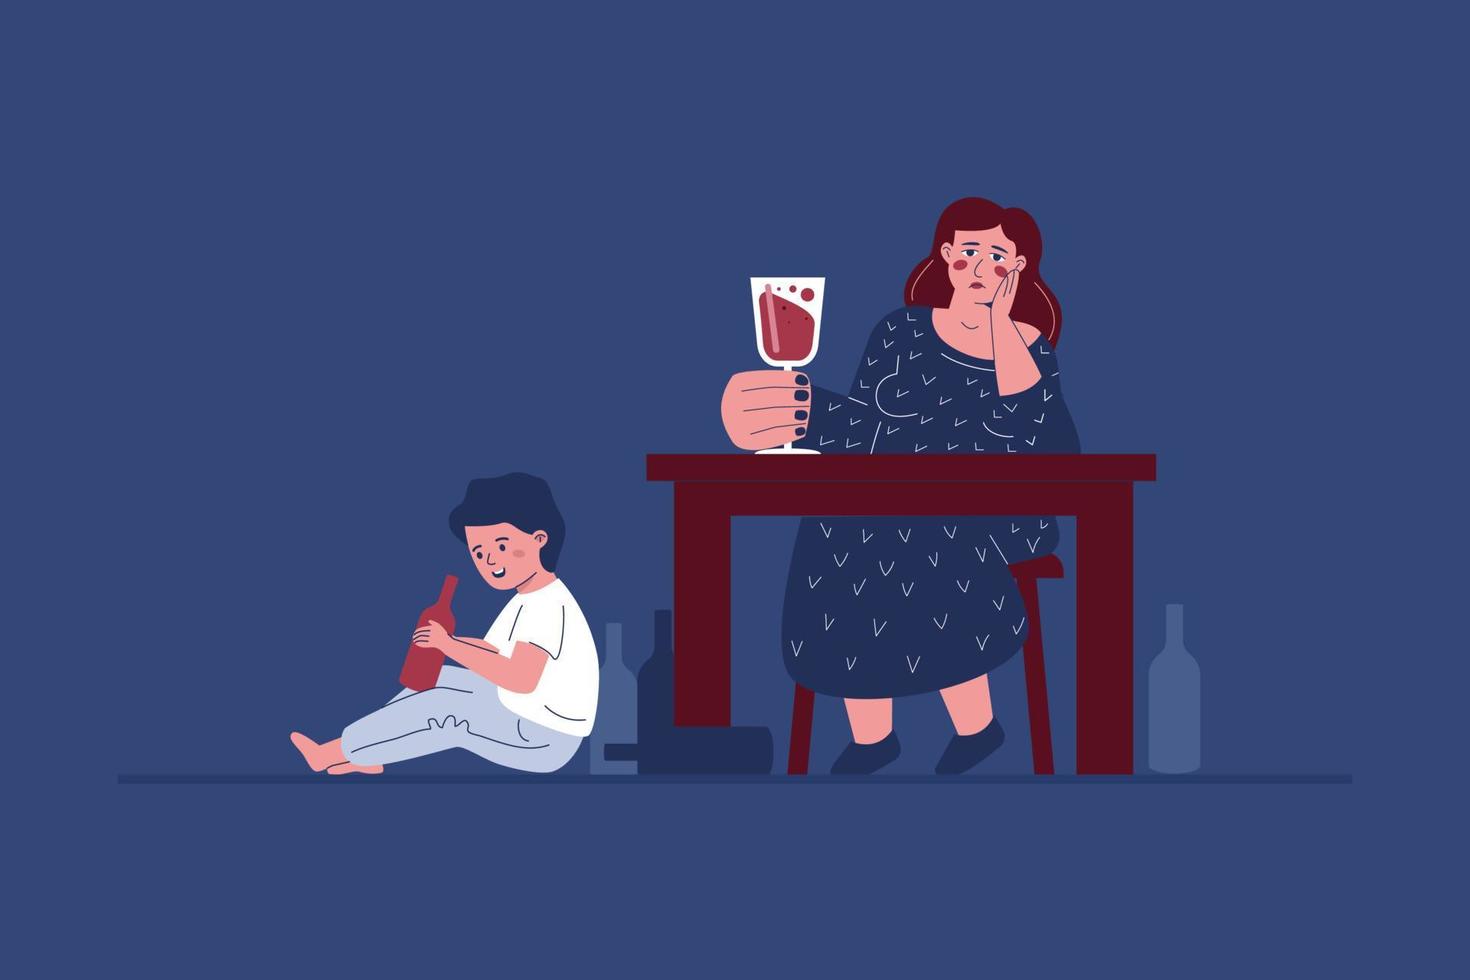 une mère alcoolique et un enfant jouant avec une bouteille d'alcool, métaphore de la transmission des traumatismes et des addictions aux générations. symbole d'une famille dysfonctionnelle. vecteur